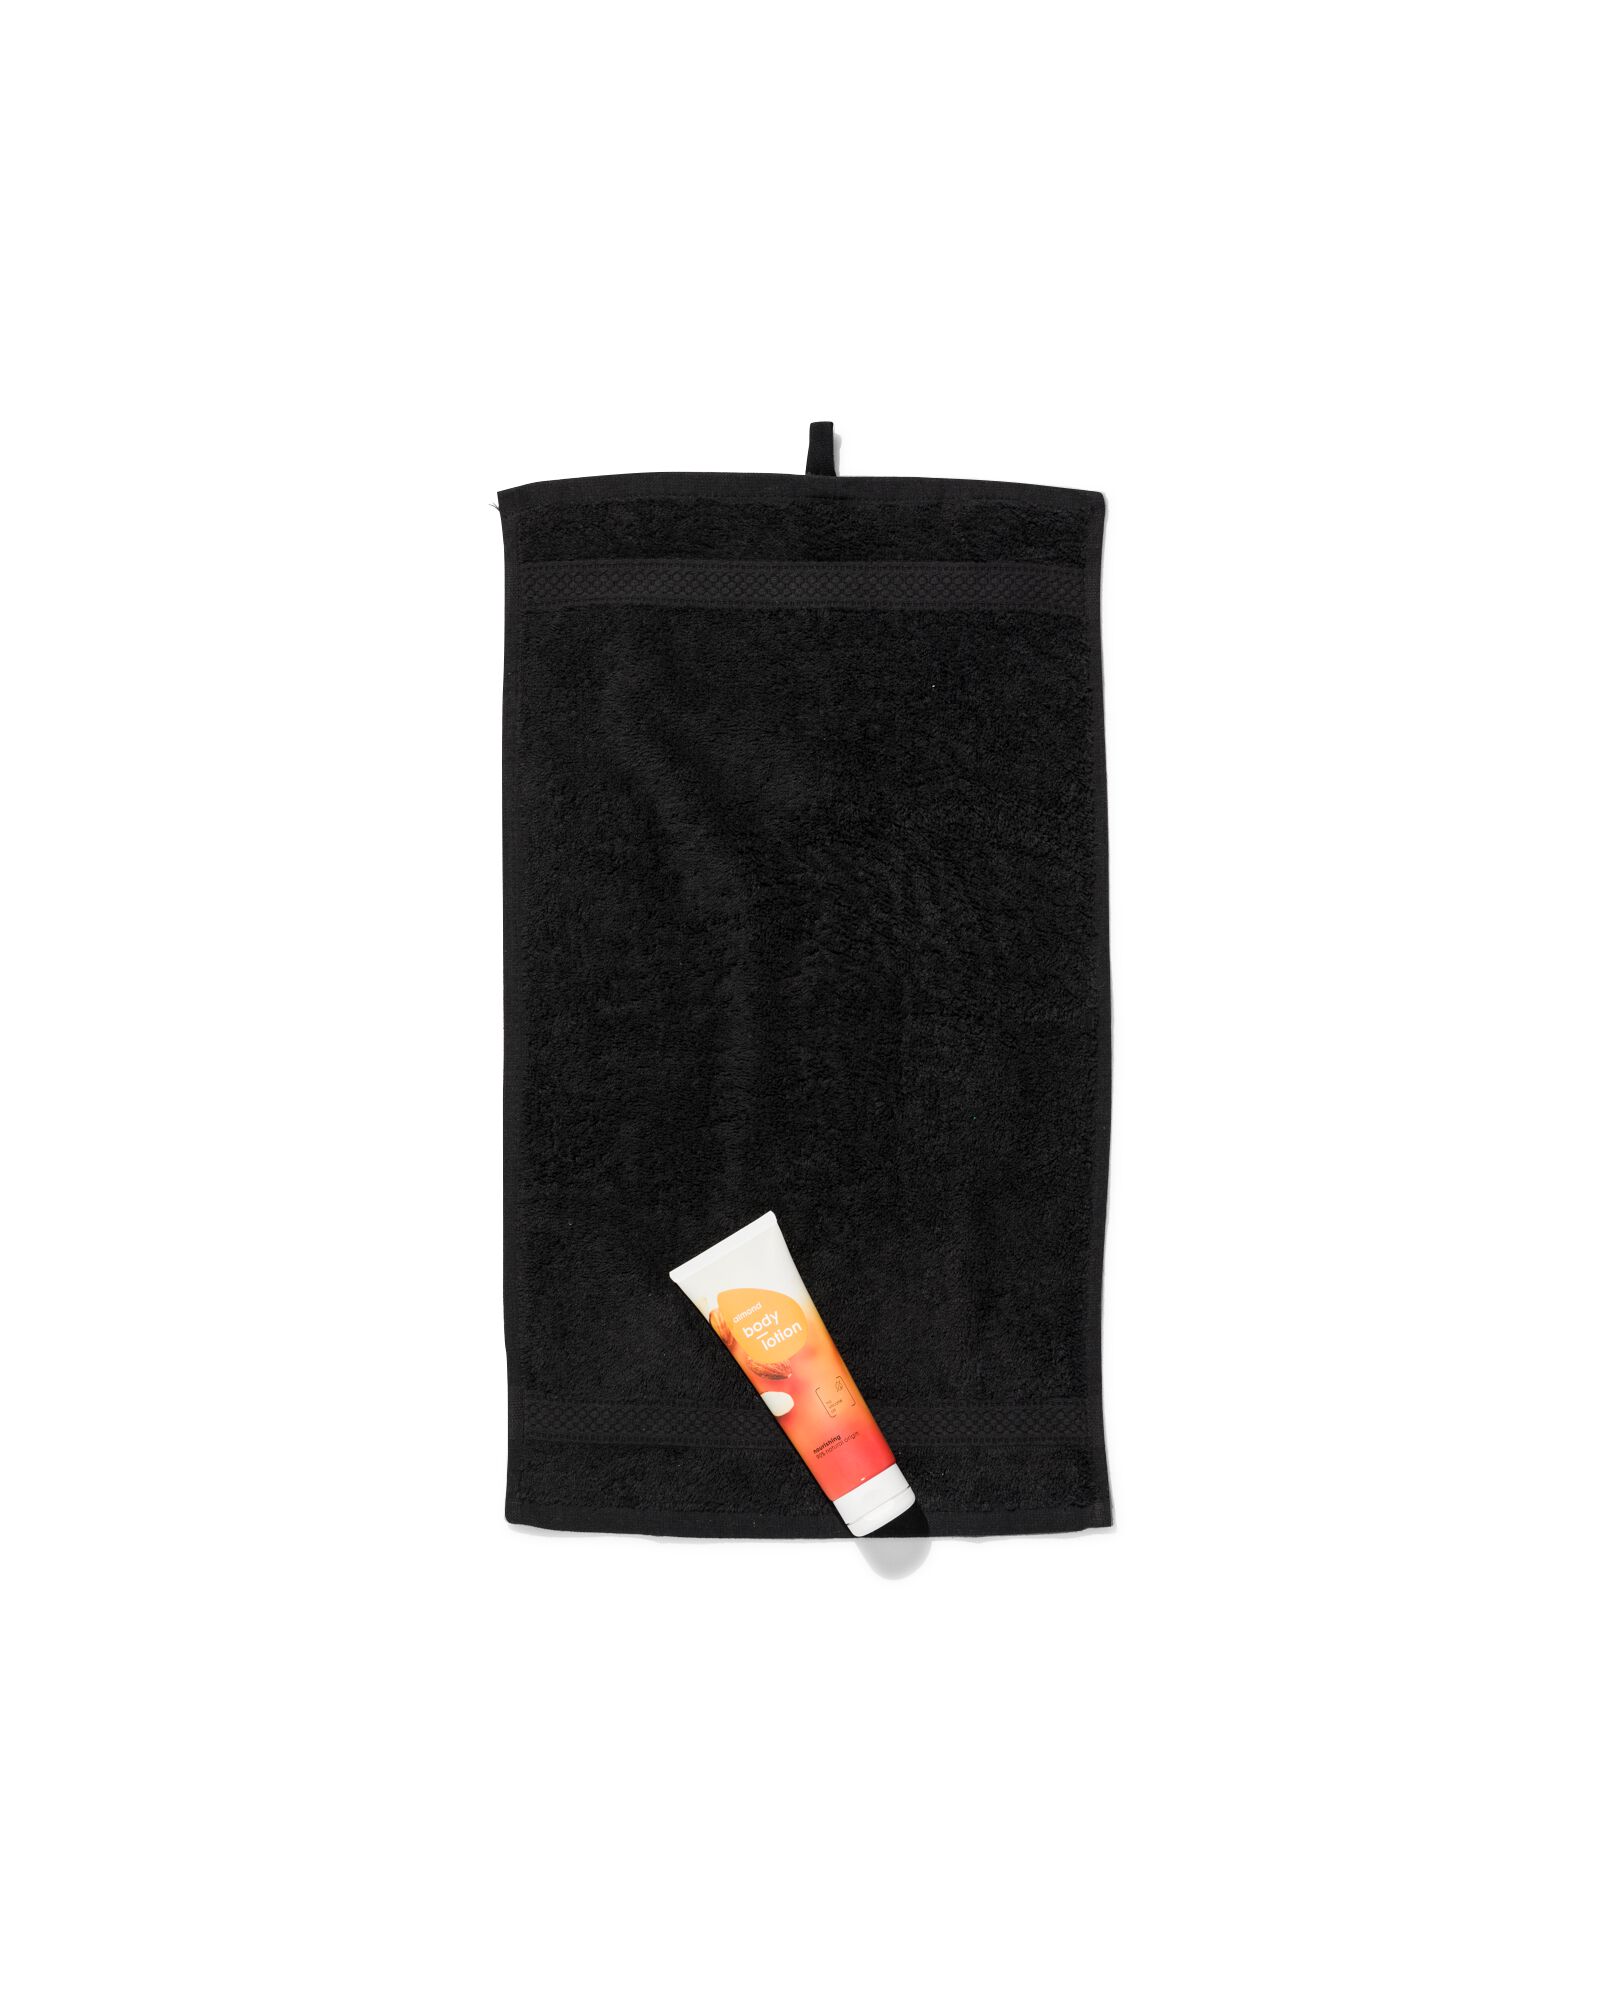 petite serviette 33x50 qualité épaisse noir noir petite serviette - 5210134 - HEMA